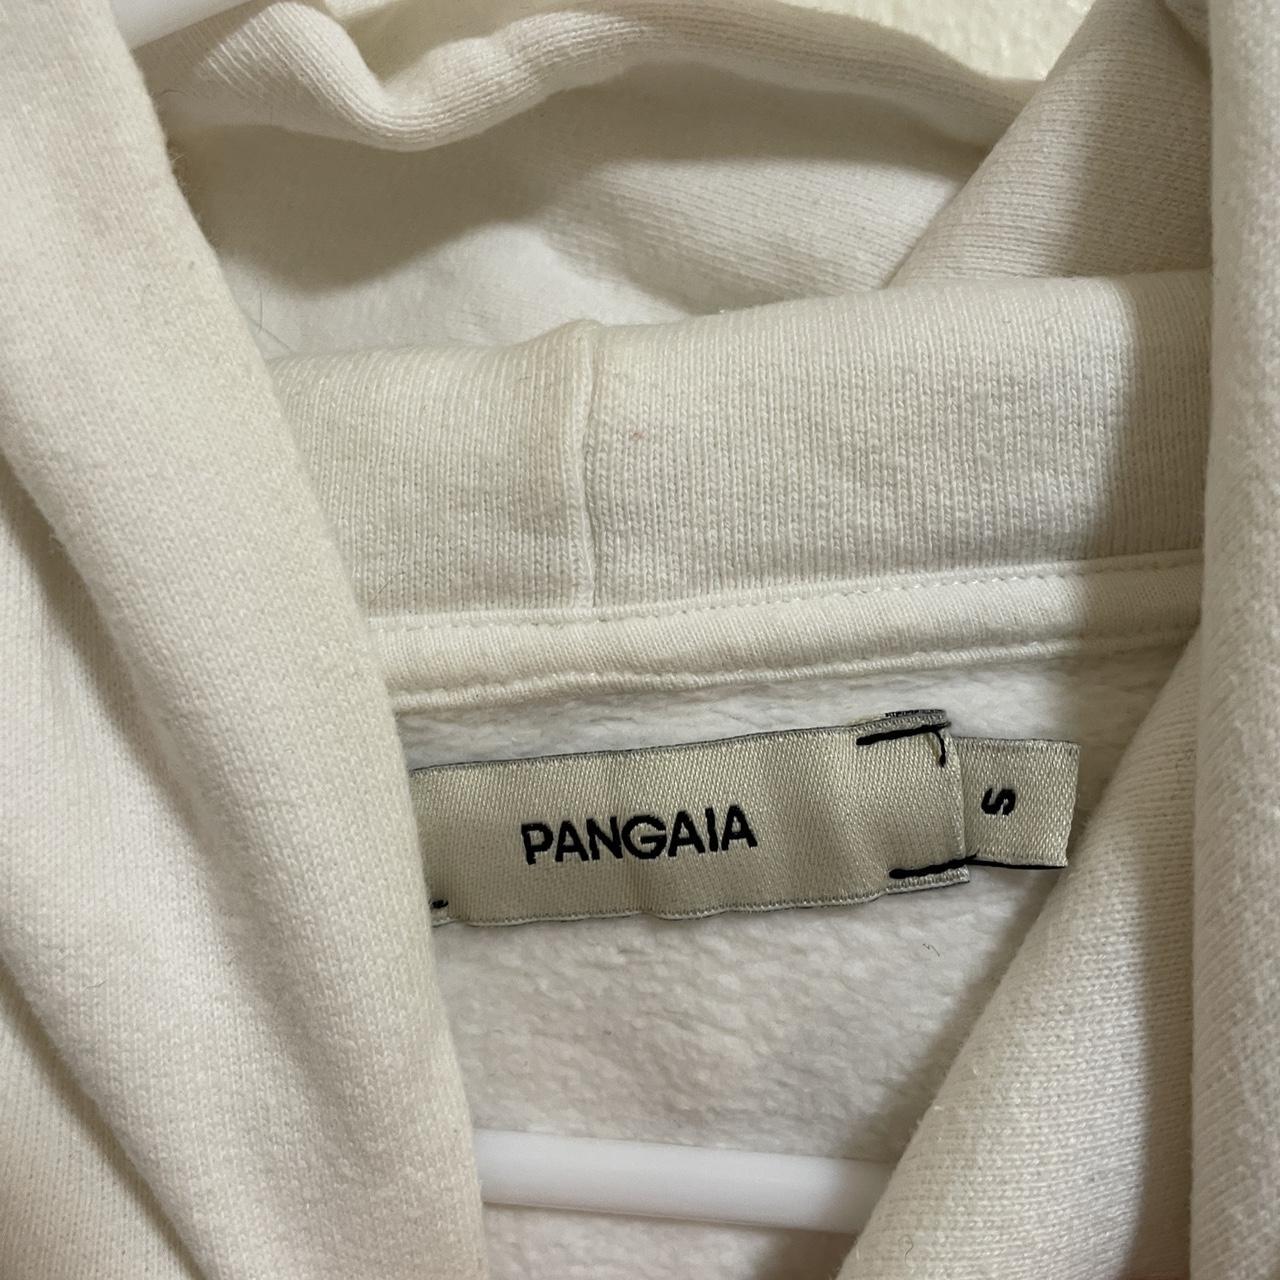 Pangaia Women's White and Cream Sweatshirt (3)